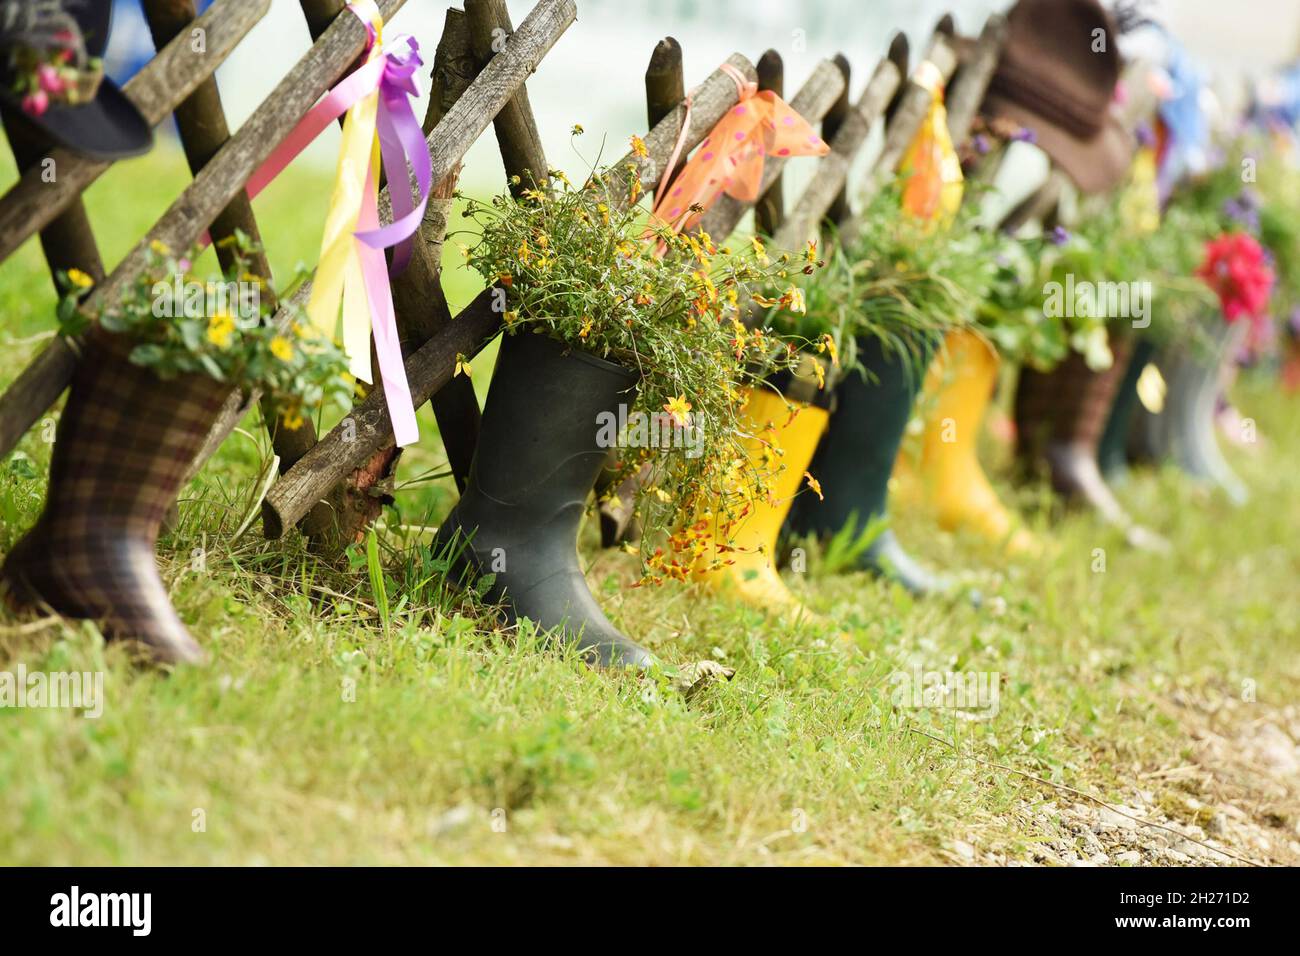 Zweckentfremdete Gummistiefel als Blumentopf im Salzkammergut, Österreich,  Europa - missbraucht Gummistiefel als Blumentopf im Salzkammergut  Stockfotografie - Alamy